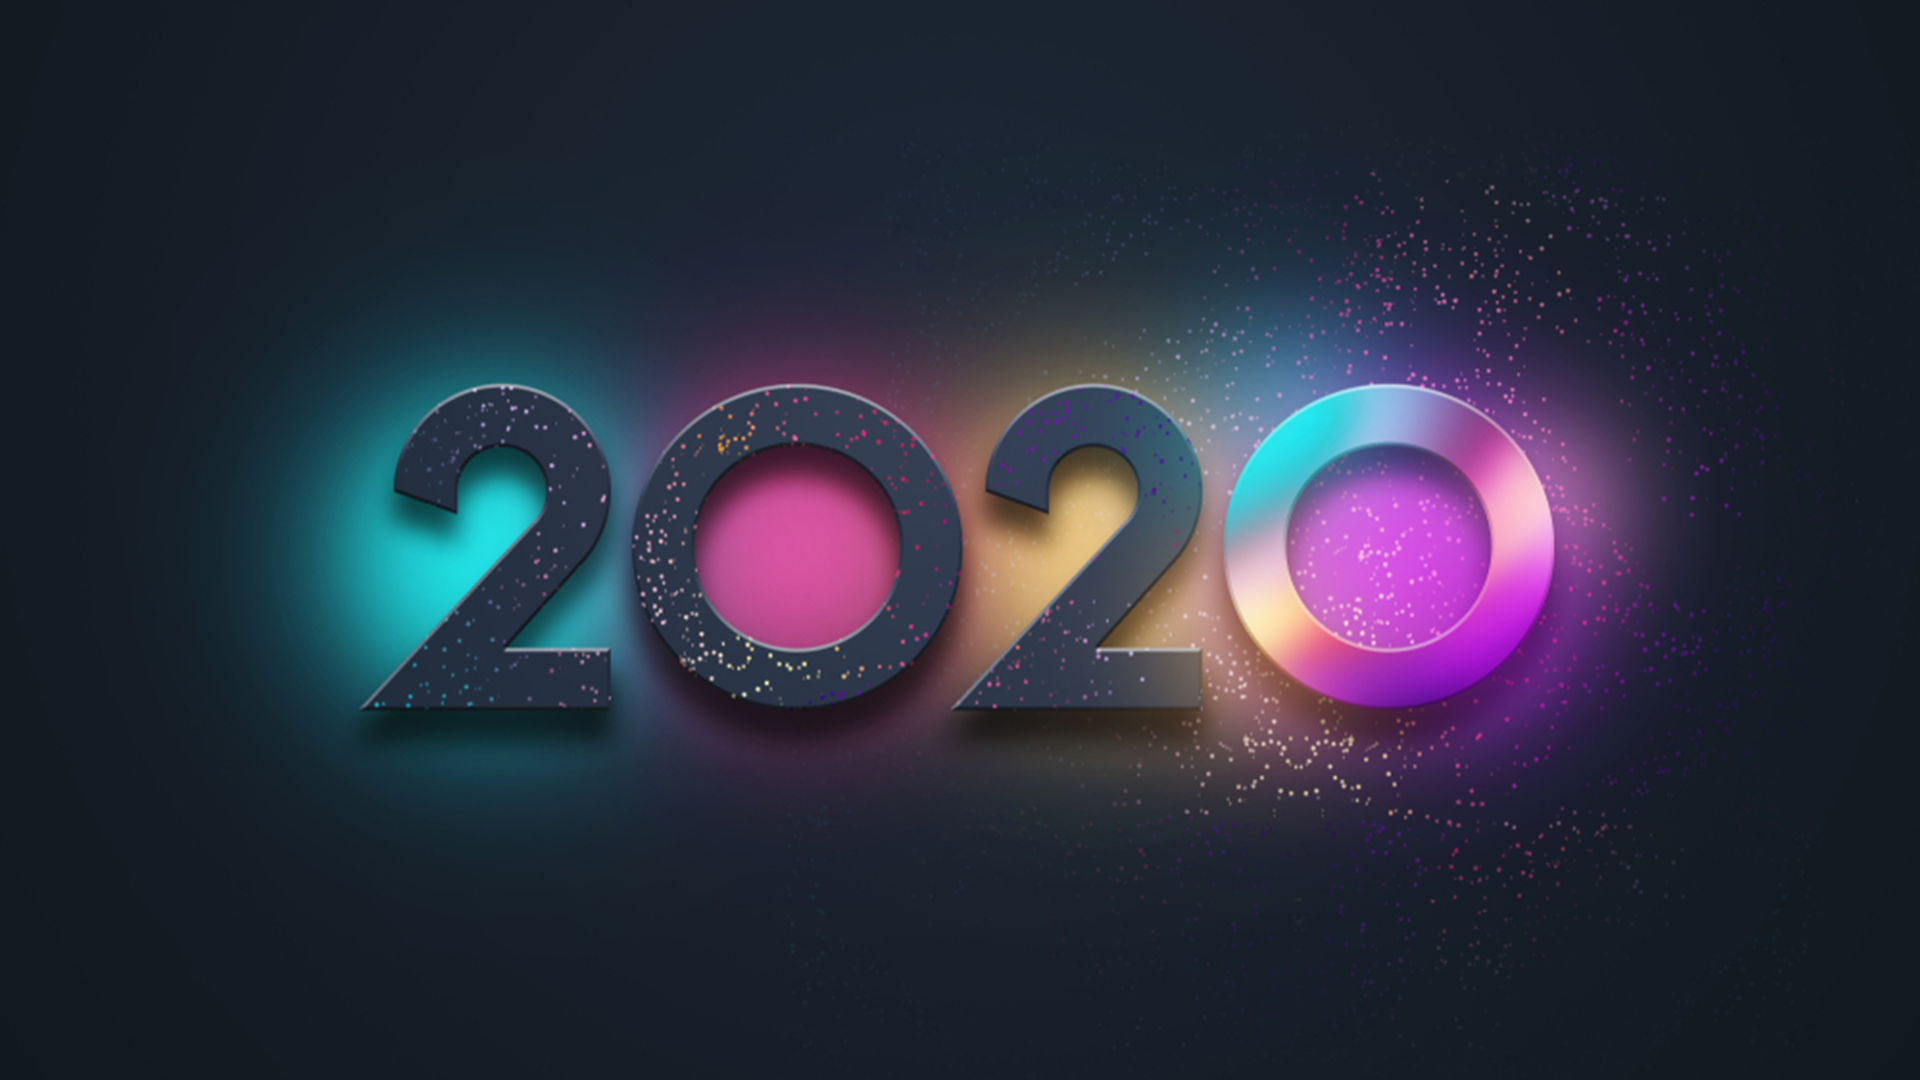 Hình nền chúc mừng năm mới 2020 cực đẹp